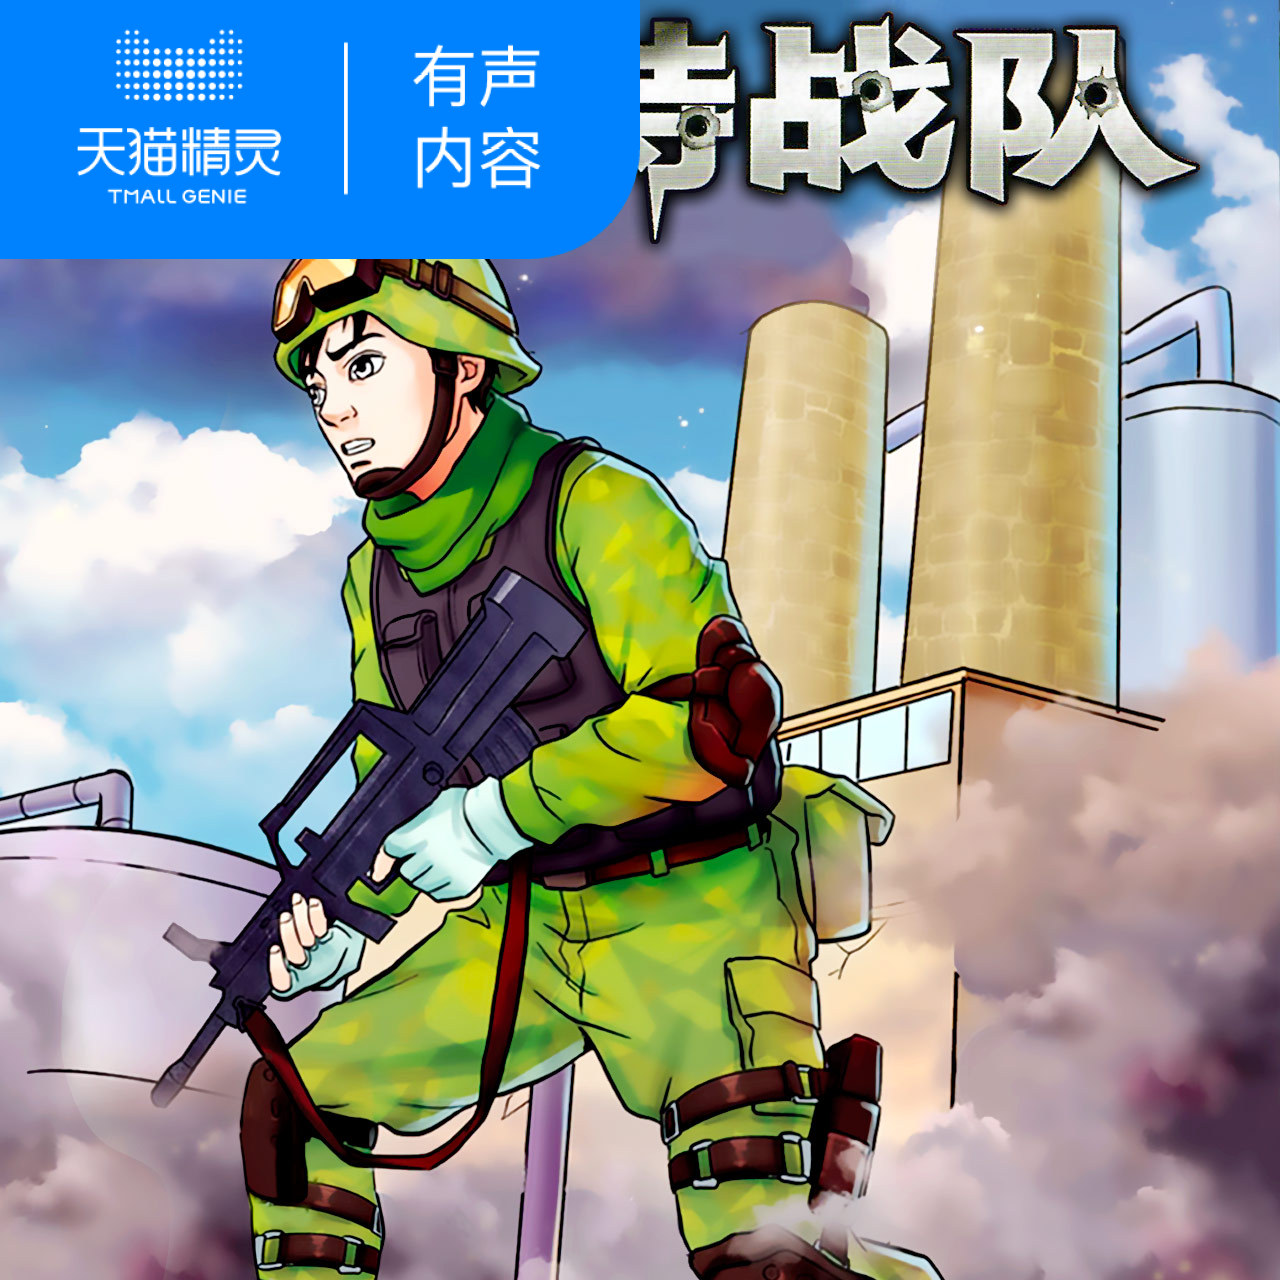 少年特战队19专为中国少年打造的阳刚励志经典军事知识科普帮孩子学会生存培养坚韧品格天猫精灵有声内容数字内容